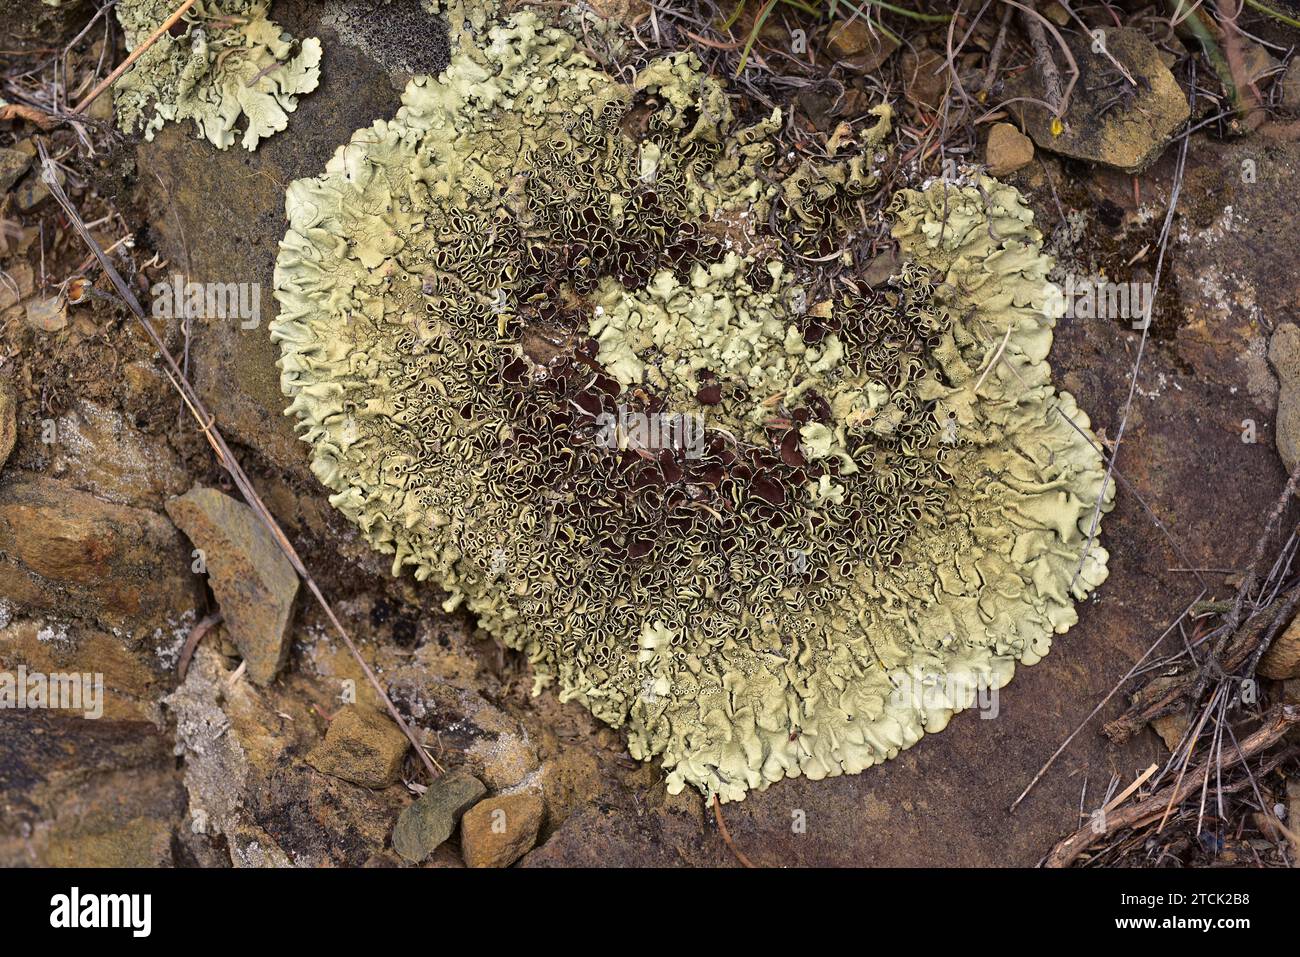 Xantoparmelia conspersa o Parmelia conspersa è un lichene foglioso che cresce su rocce silicee. Questa foto è stata scattata a la Albera, provincia di Girona, Foto Stock